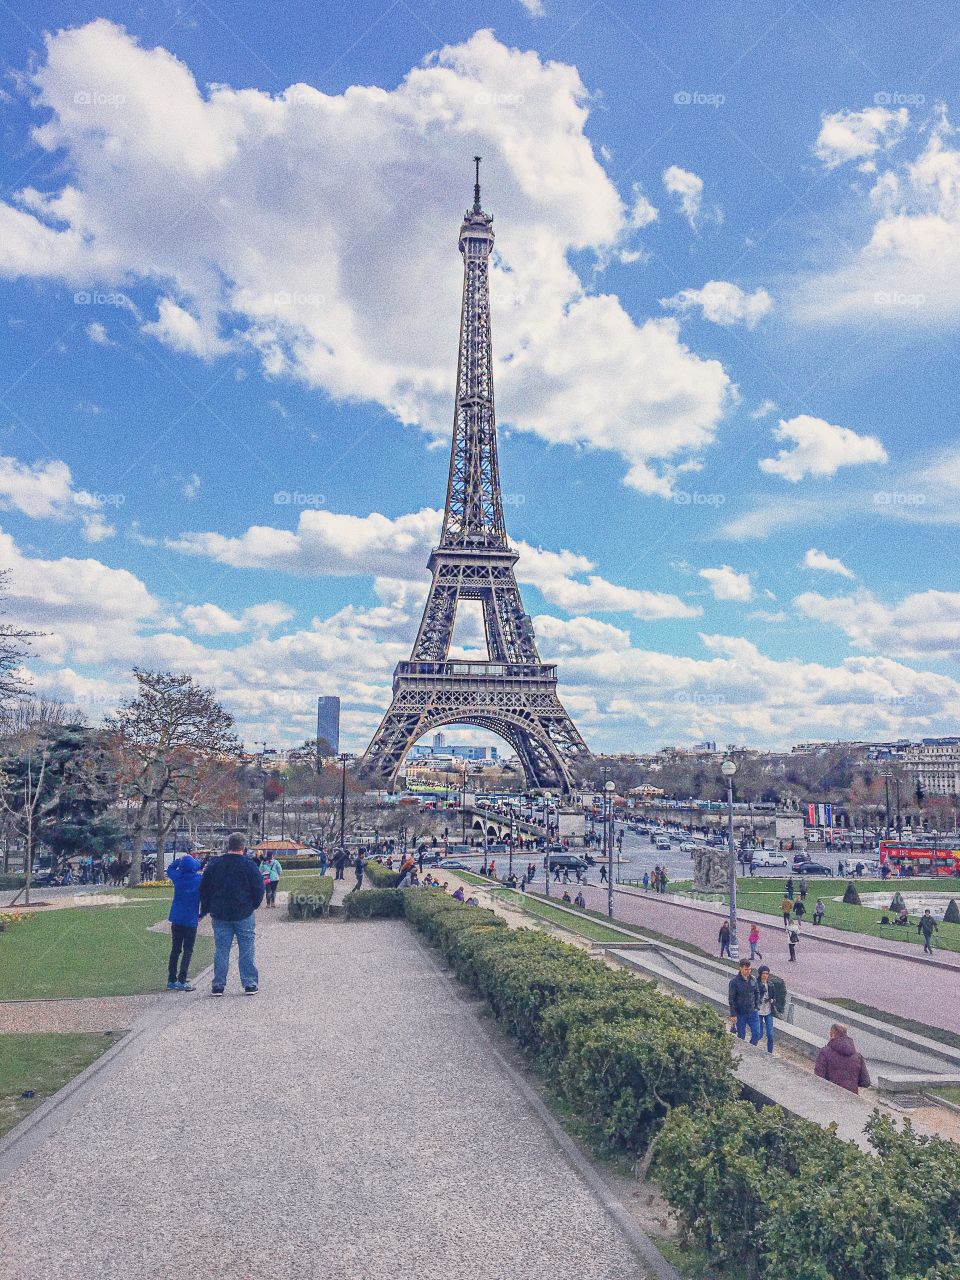 Paris simplesmente é  um lugar cheio de novas descobertas, essa foto representa muito bem essa cidade cheias de encantos. 